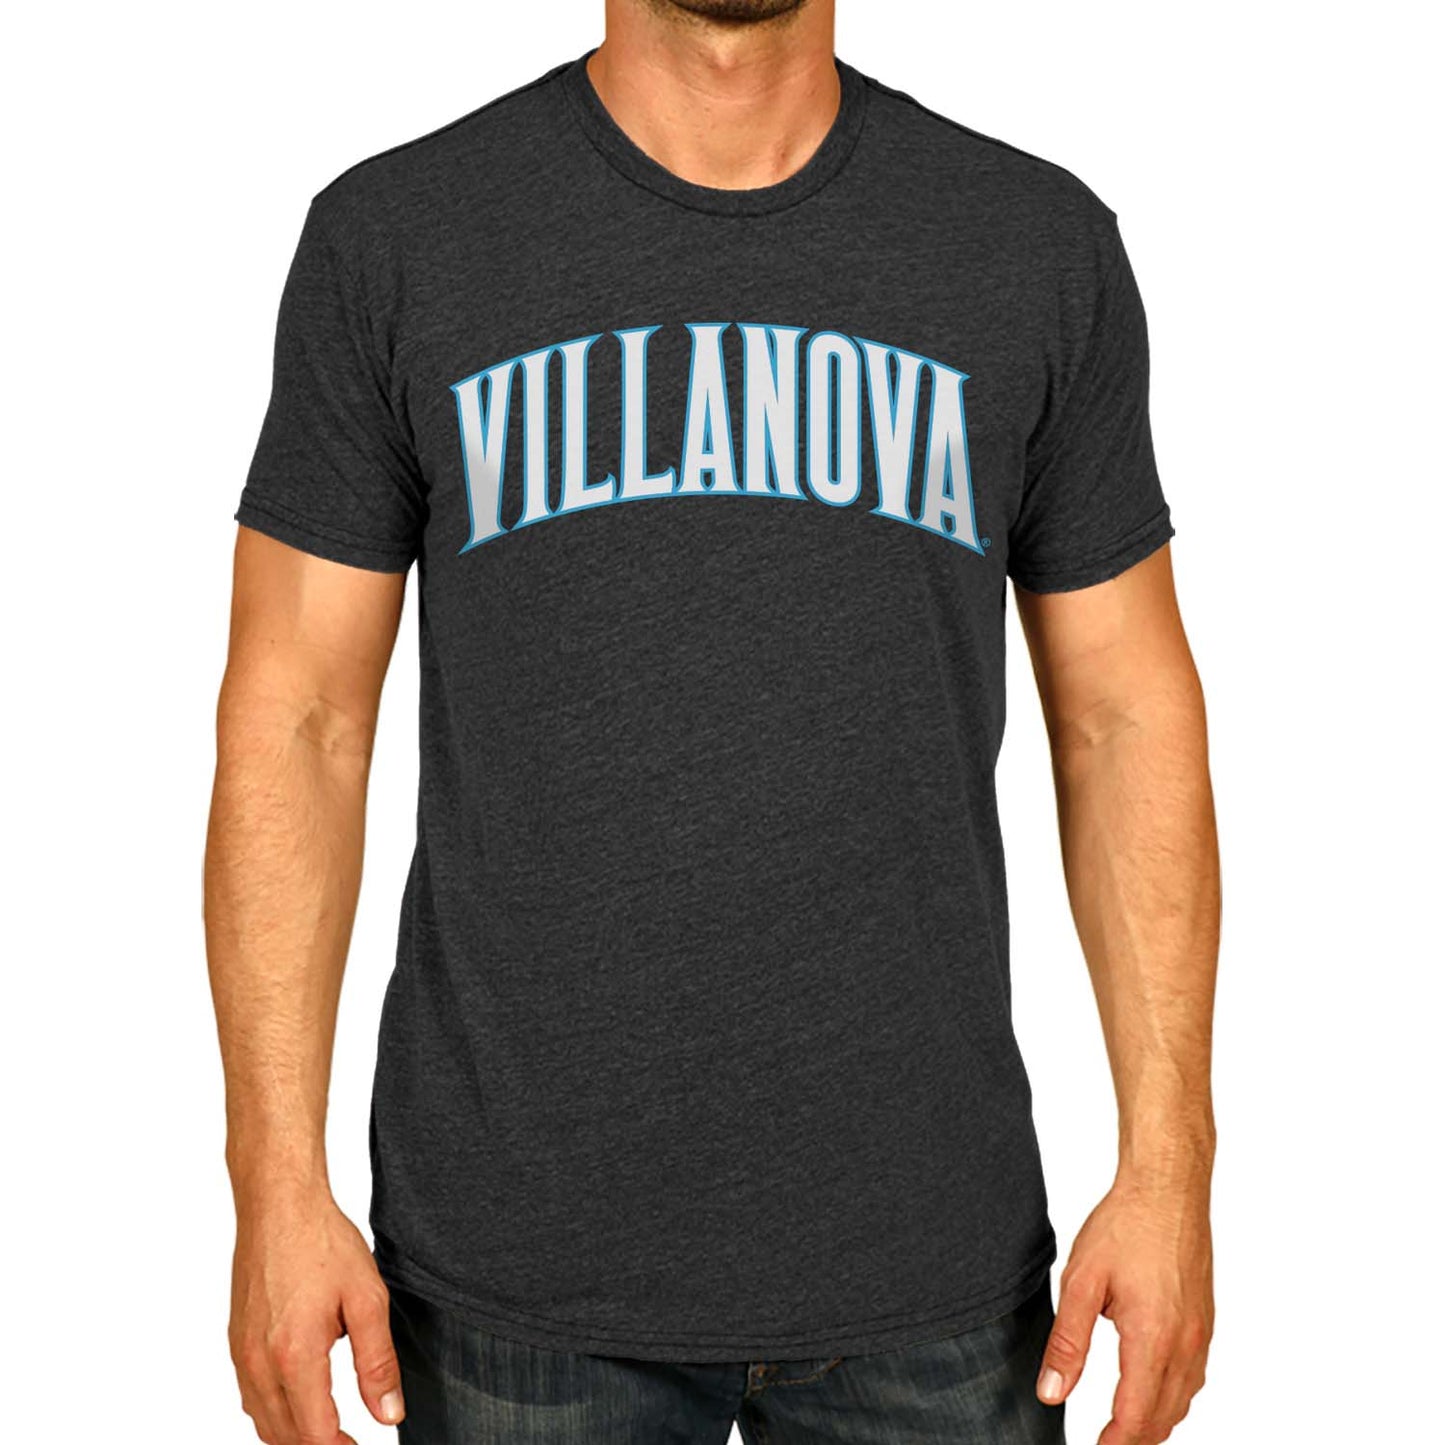 Villanova Wildcats Campus Colors NCAA Adult Cotton Blend Charcoal Tagless T-Shirt - Charcoal